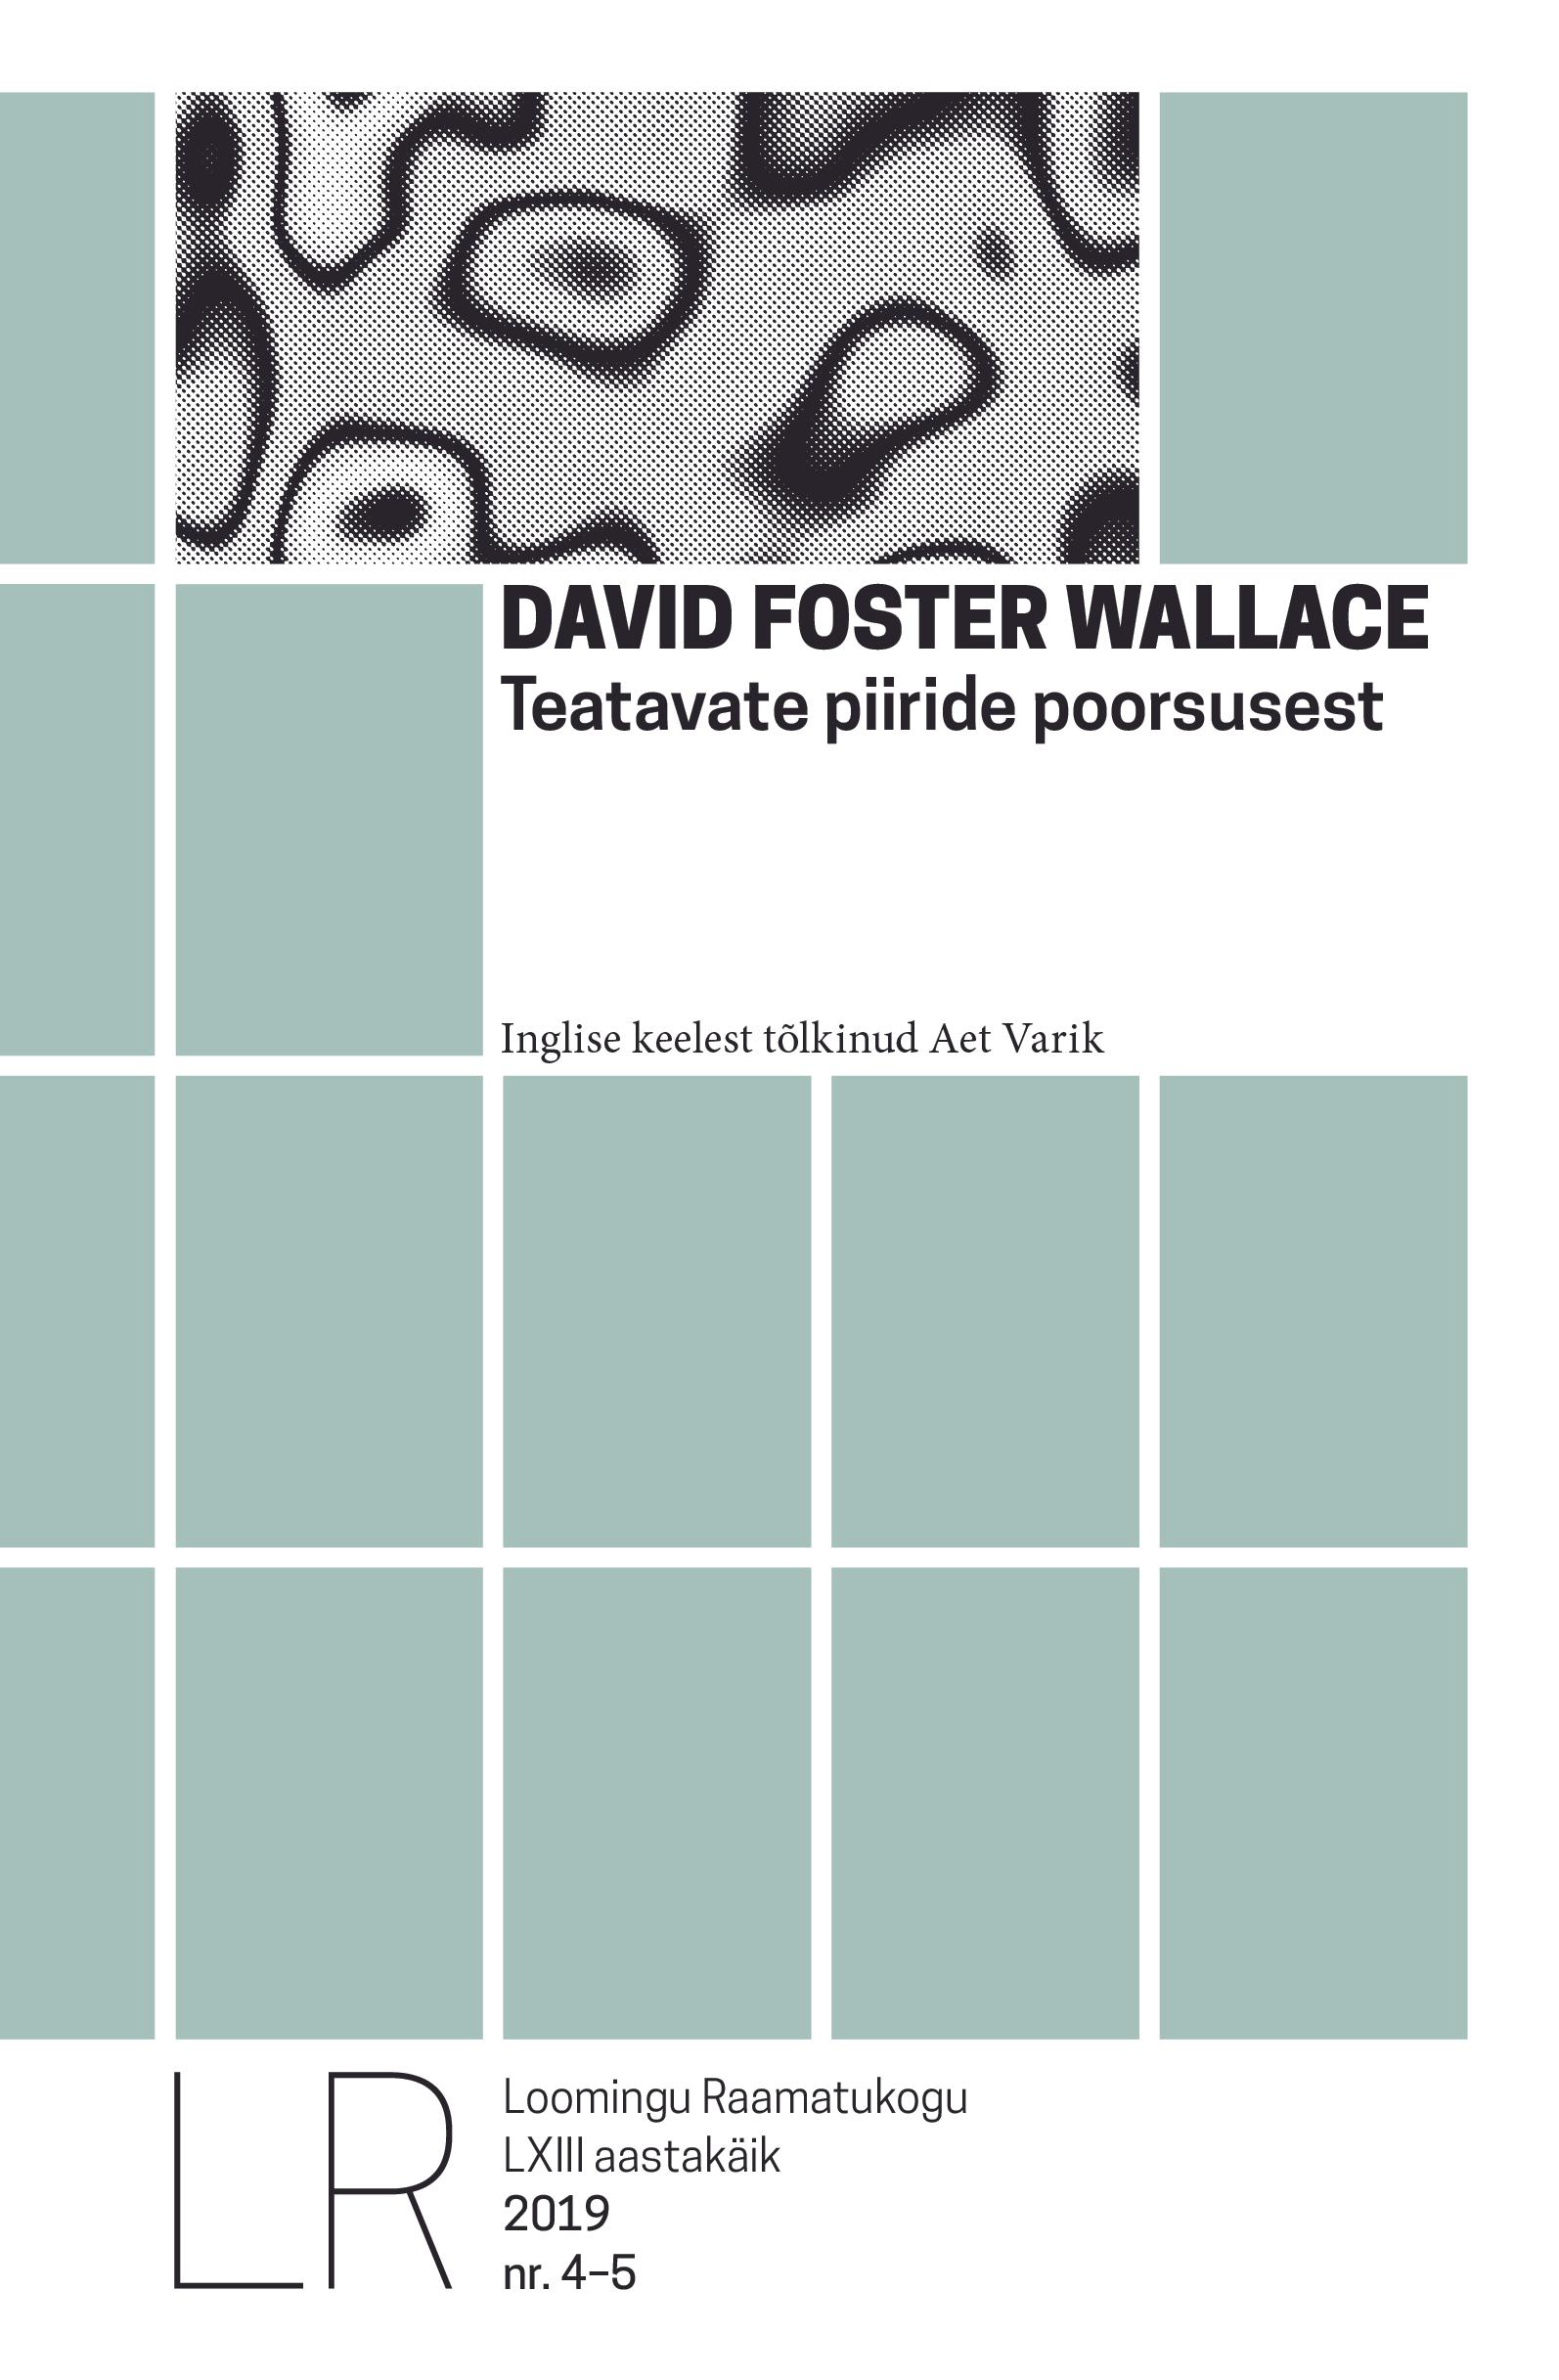 LRK 4-5/2019 DAVID FOSTER WALLACE. TEATAVATE PIIRIIDE POORSUSEST